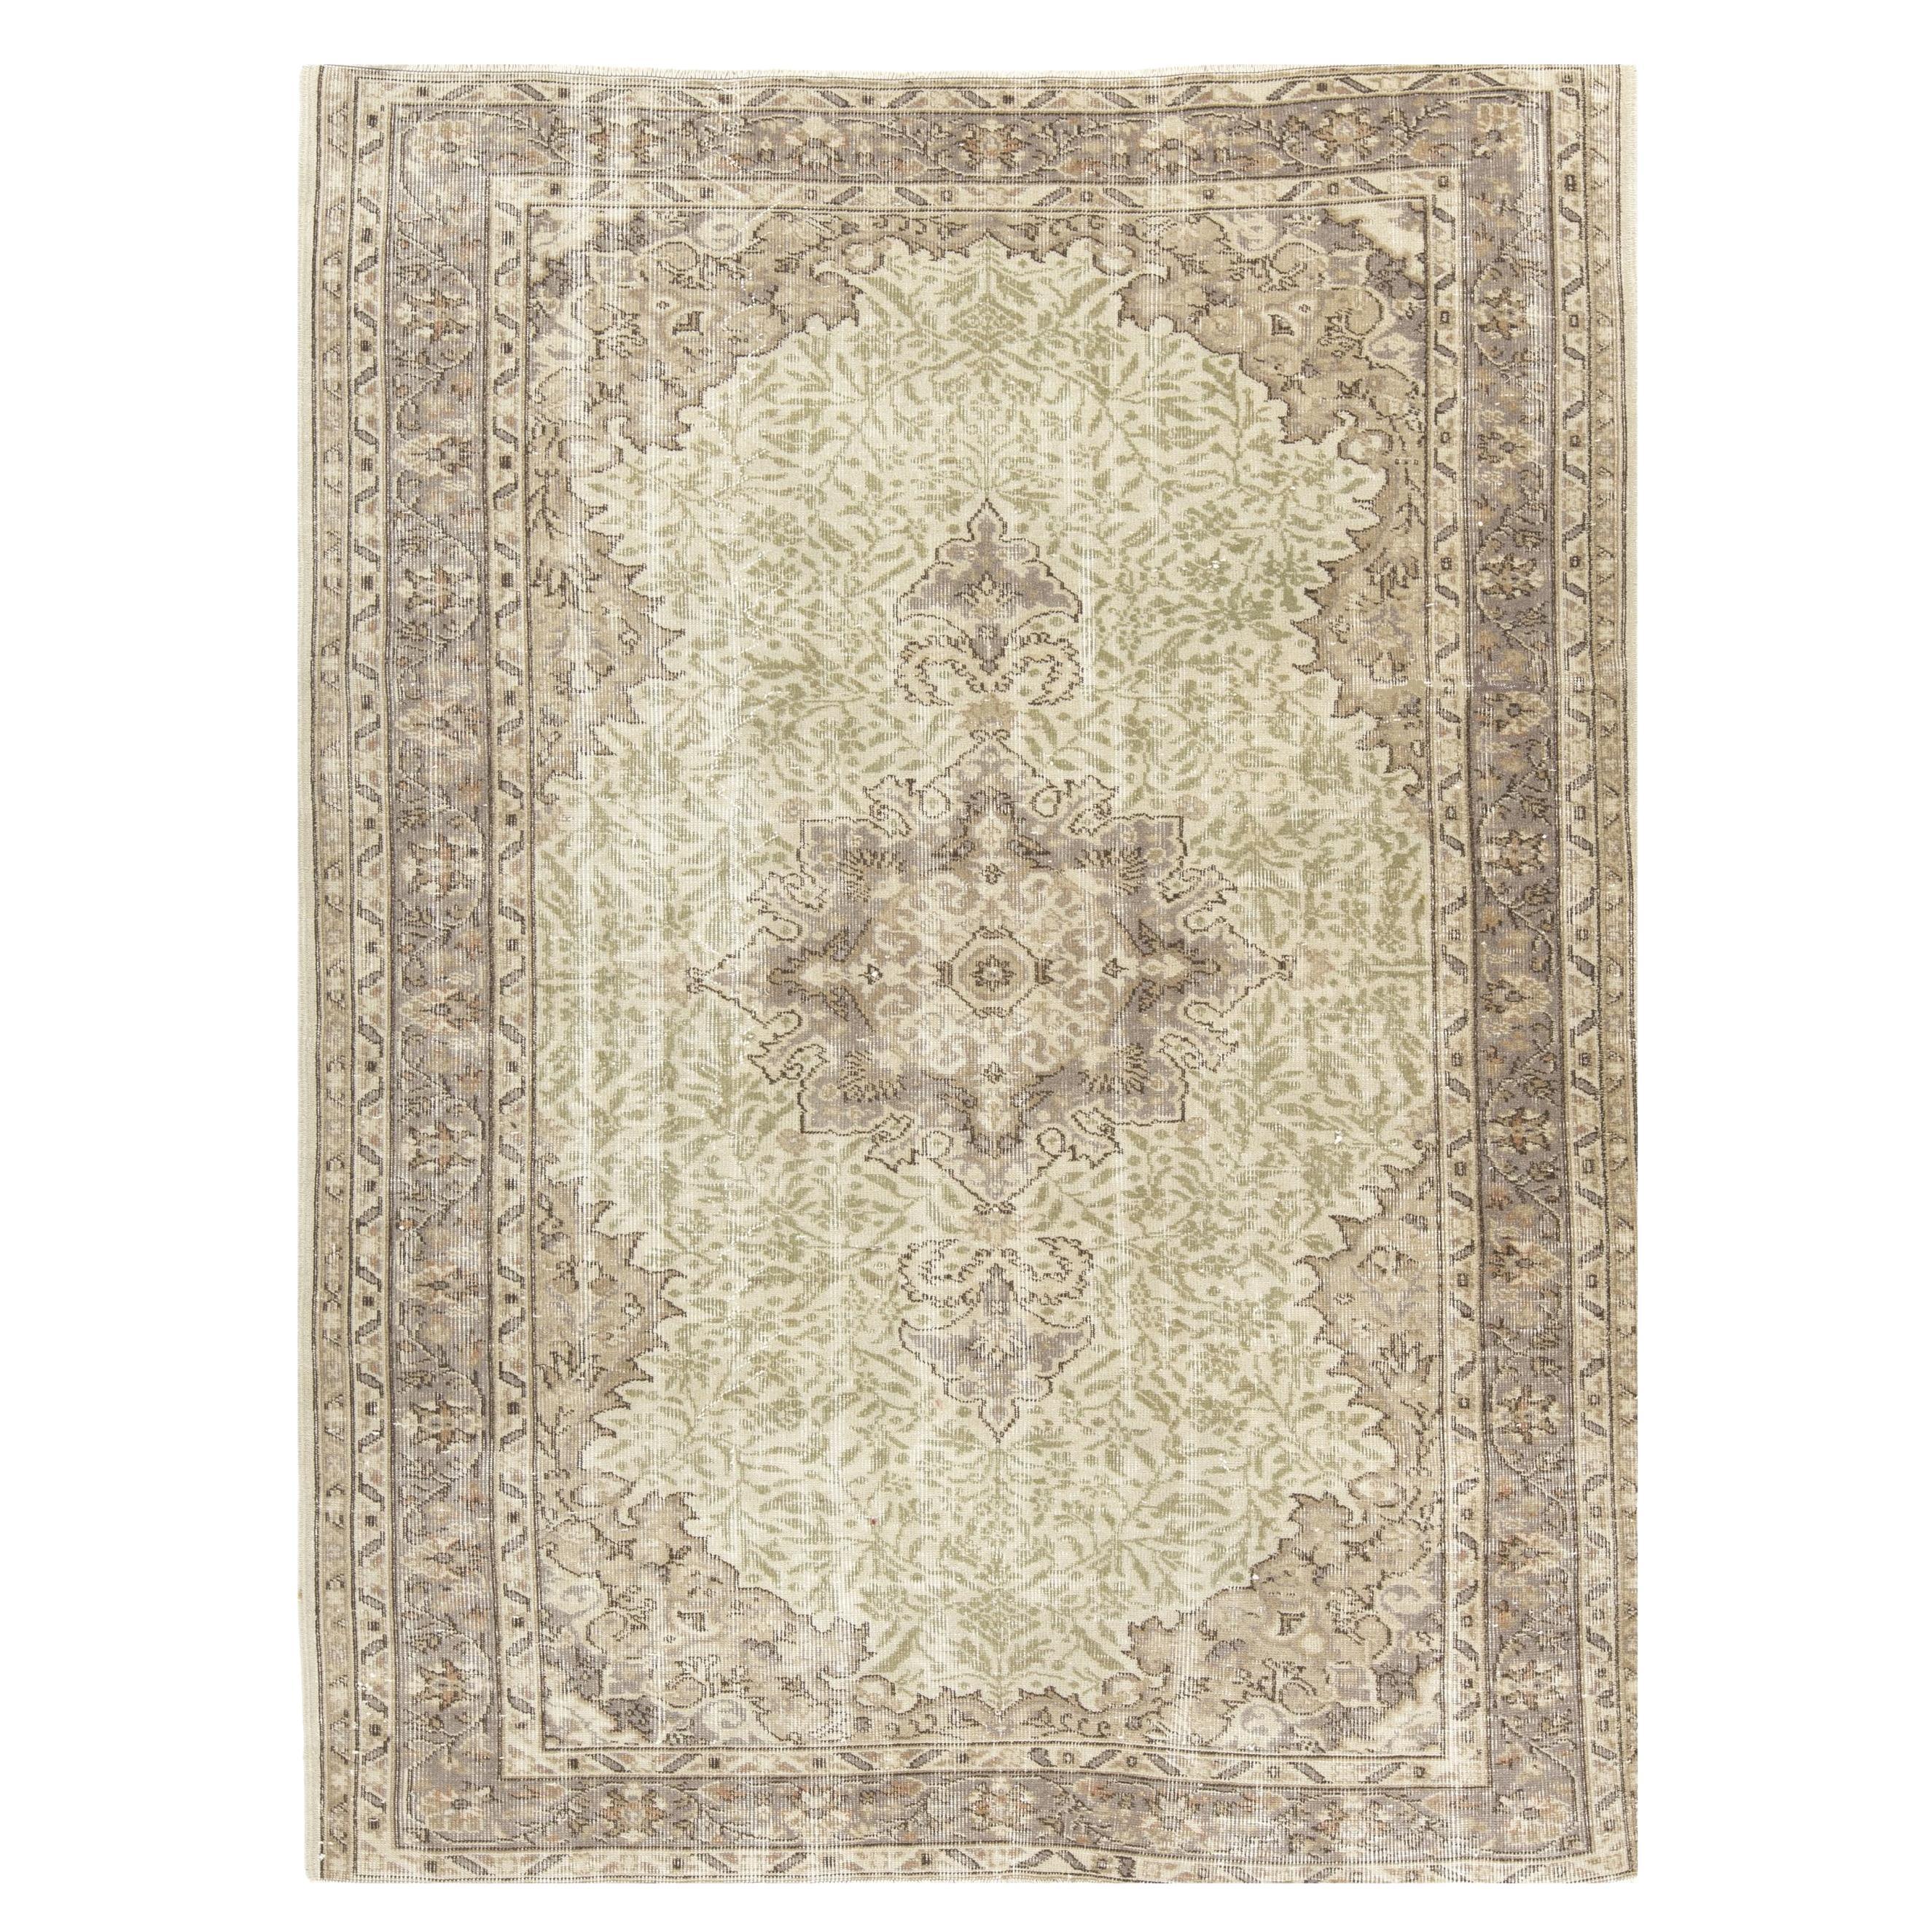 5.6x7.7 Ft Handmade Sun Faded Oushak Area Rug, Medallion Design Wool Carpet For Sale